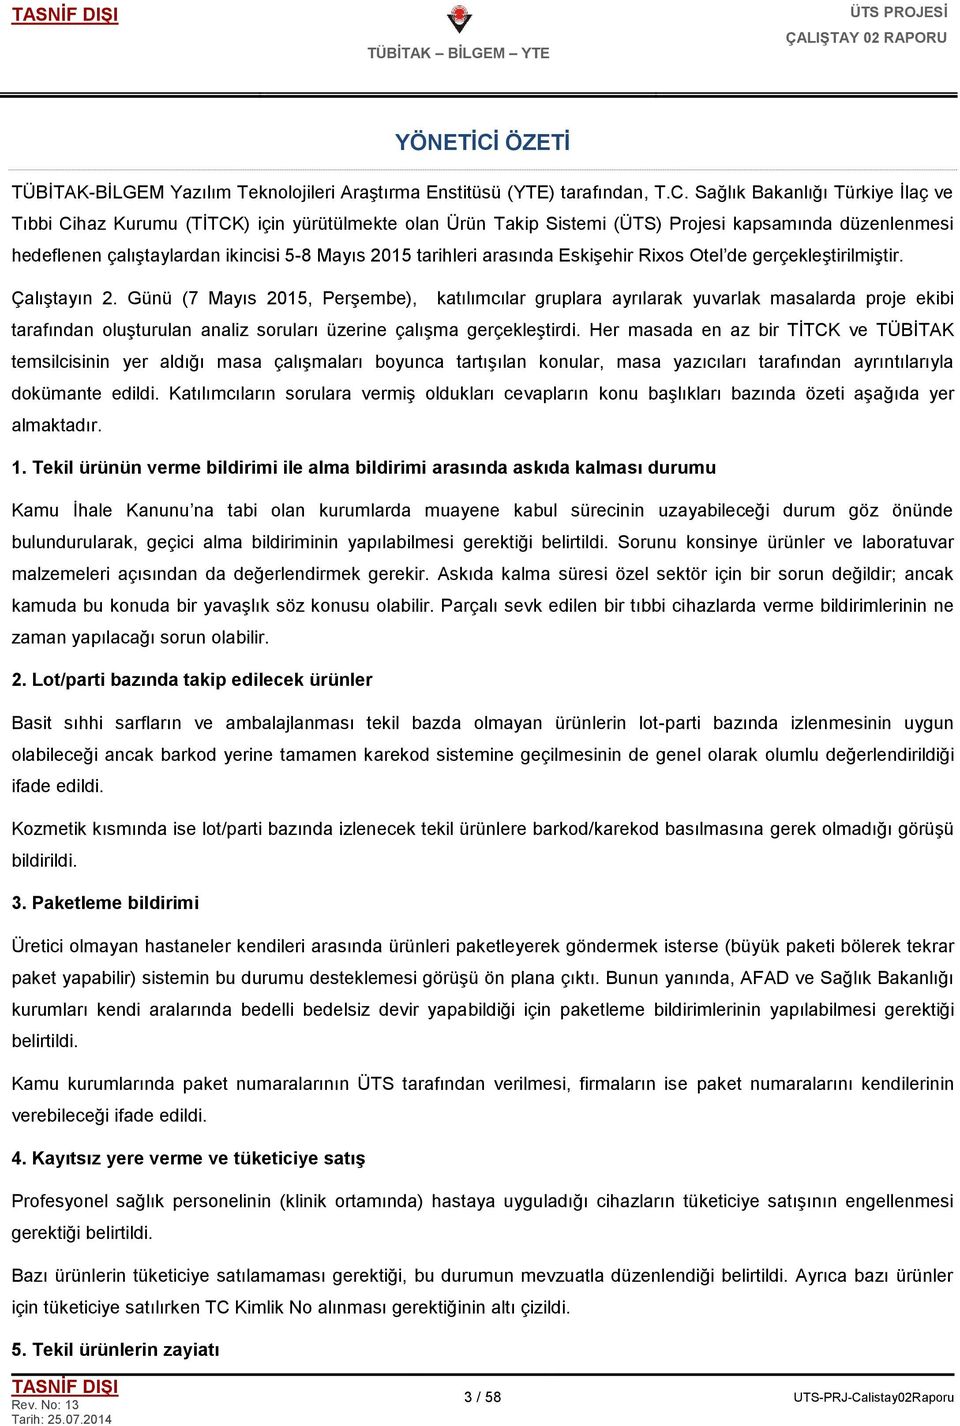 Sağlık Bakanlığı Türkiye Ġlaç ve Tıbbi Cihaz Kurumu (TĠTCK) için yürütülmekte olan Ürün Takip Sistemi (ÜTS) Projesi kapsamında düzenlenmesi hedeflenen çalıģtaylardan ikincisi 5-8 Mayıs 2015 tarihleri